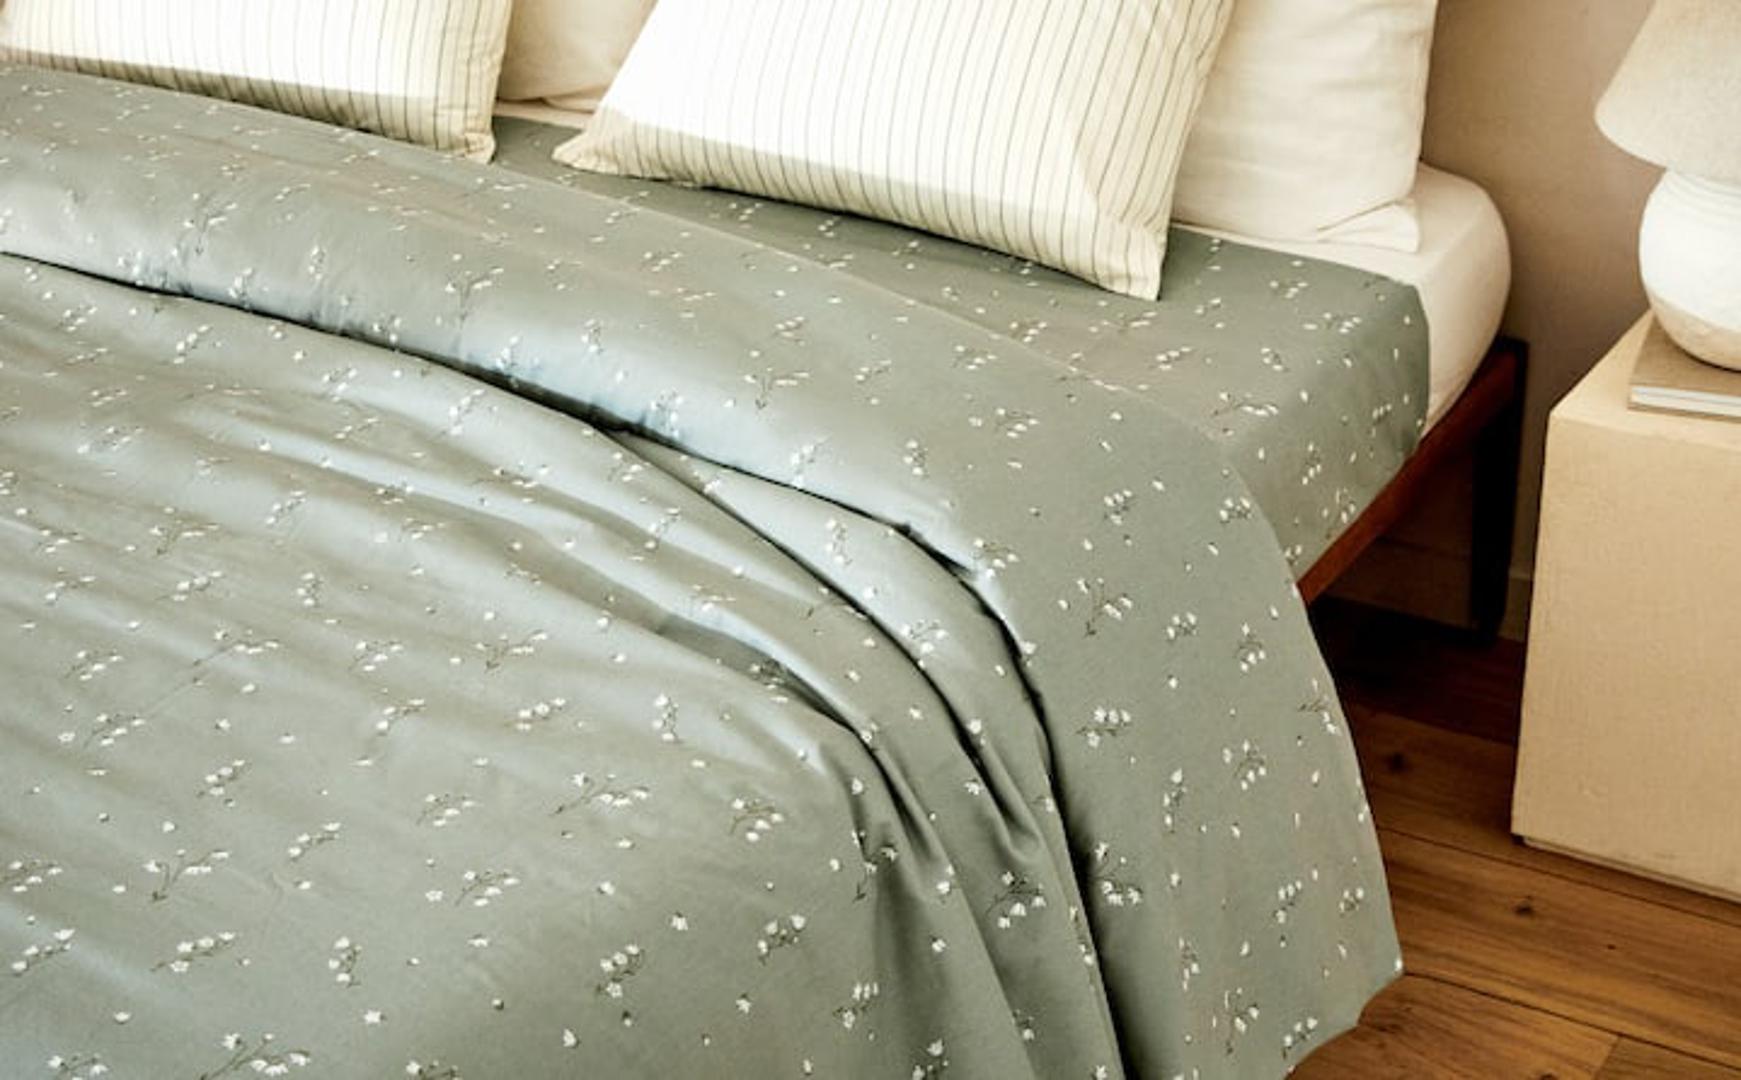 Ako želite unijeti malo živosti u sobu dodajte posteljinu u pastelnim tonovima sa zanimljivim uzorcima